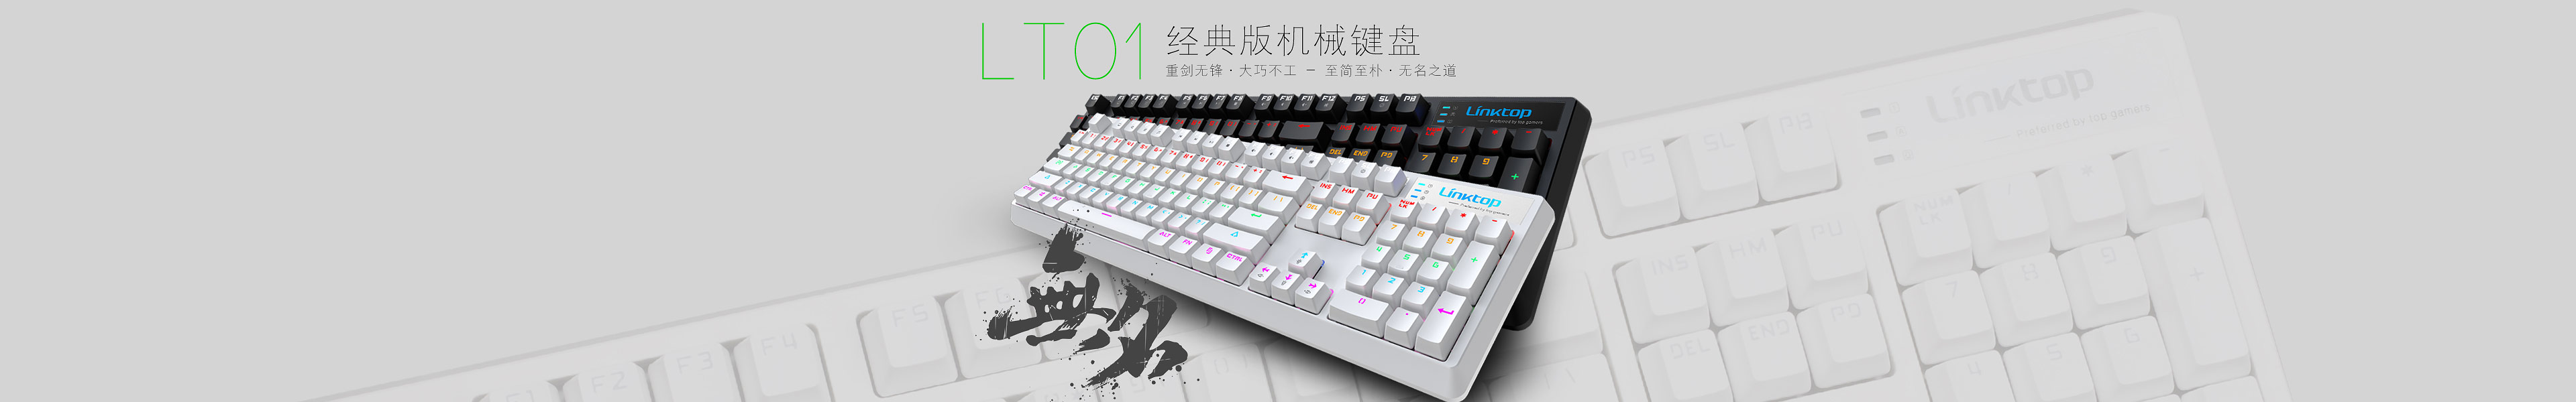 K23-无名-LT01机械键盘